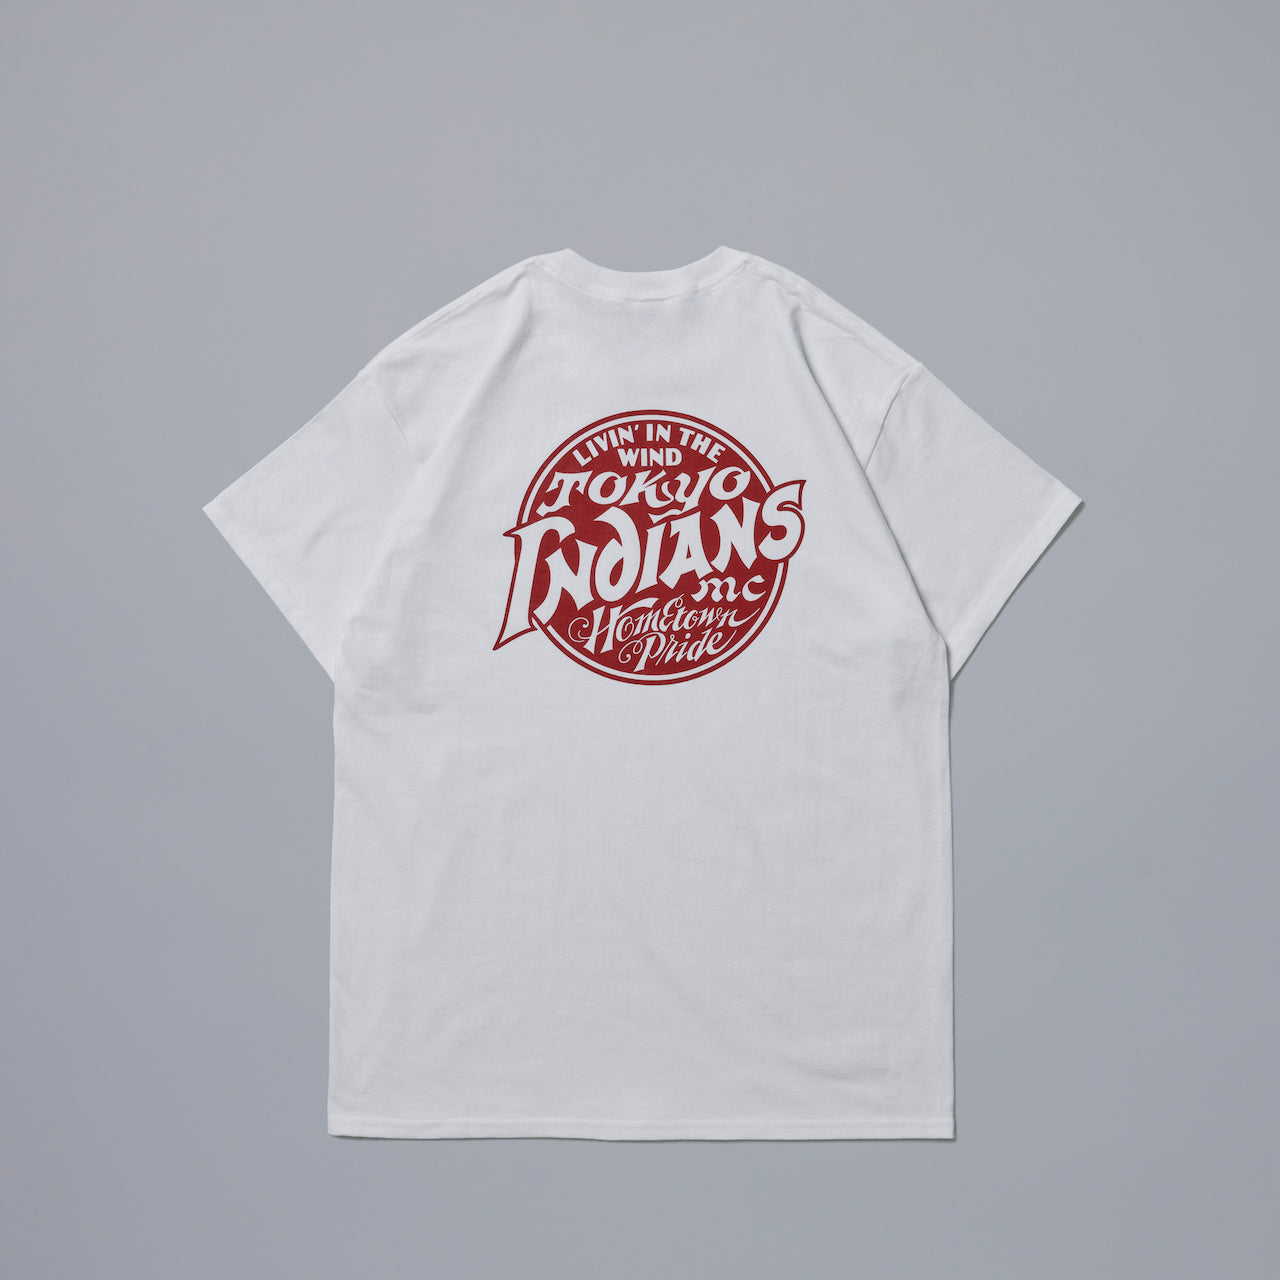 Timc Inc. INC-SST 04 Tee 東京インディアンズ Tシャツ